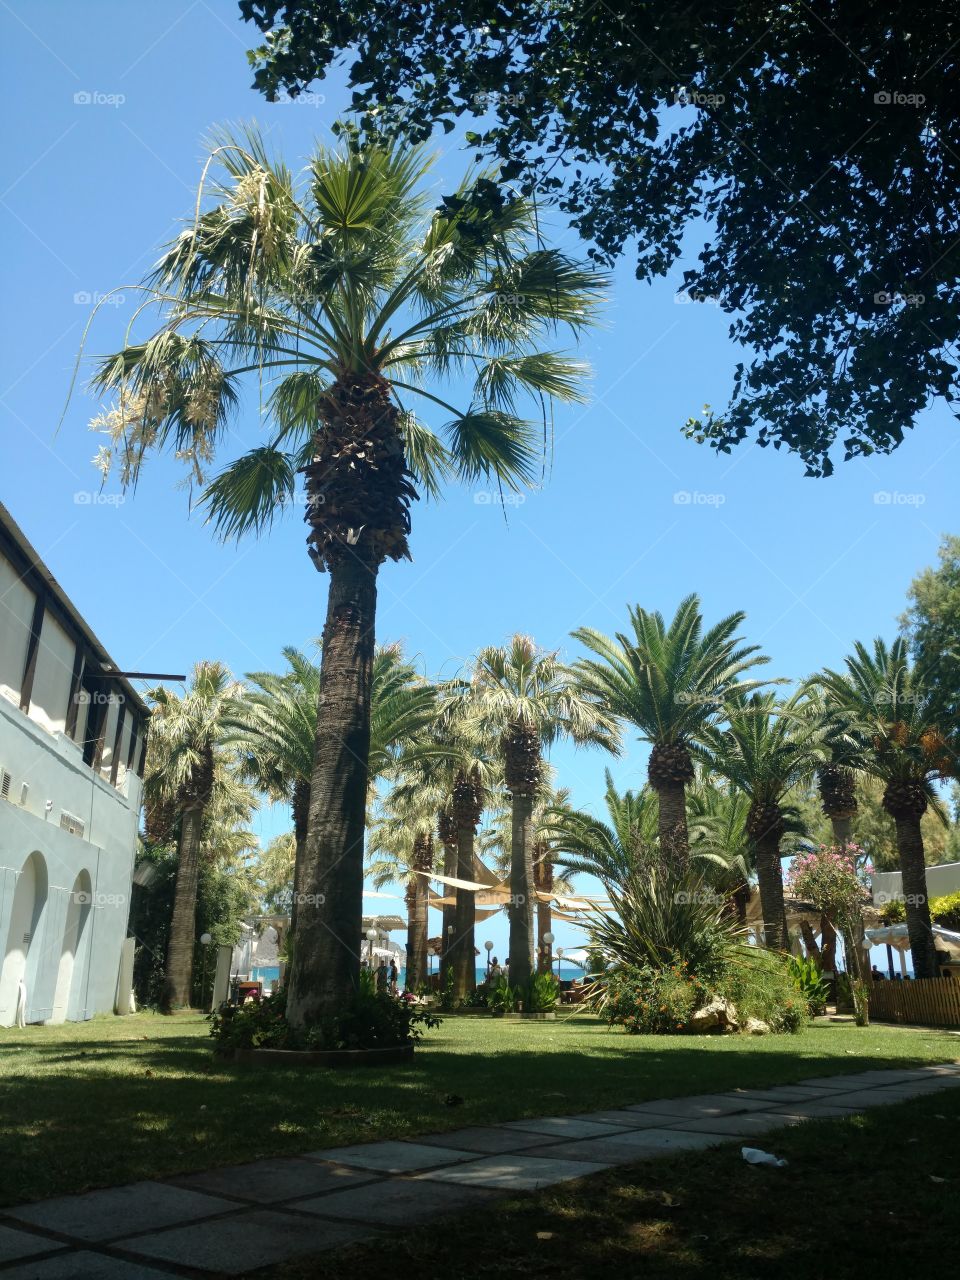 Palm Tree by Sidewalk to Beach